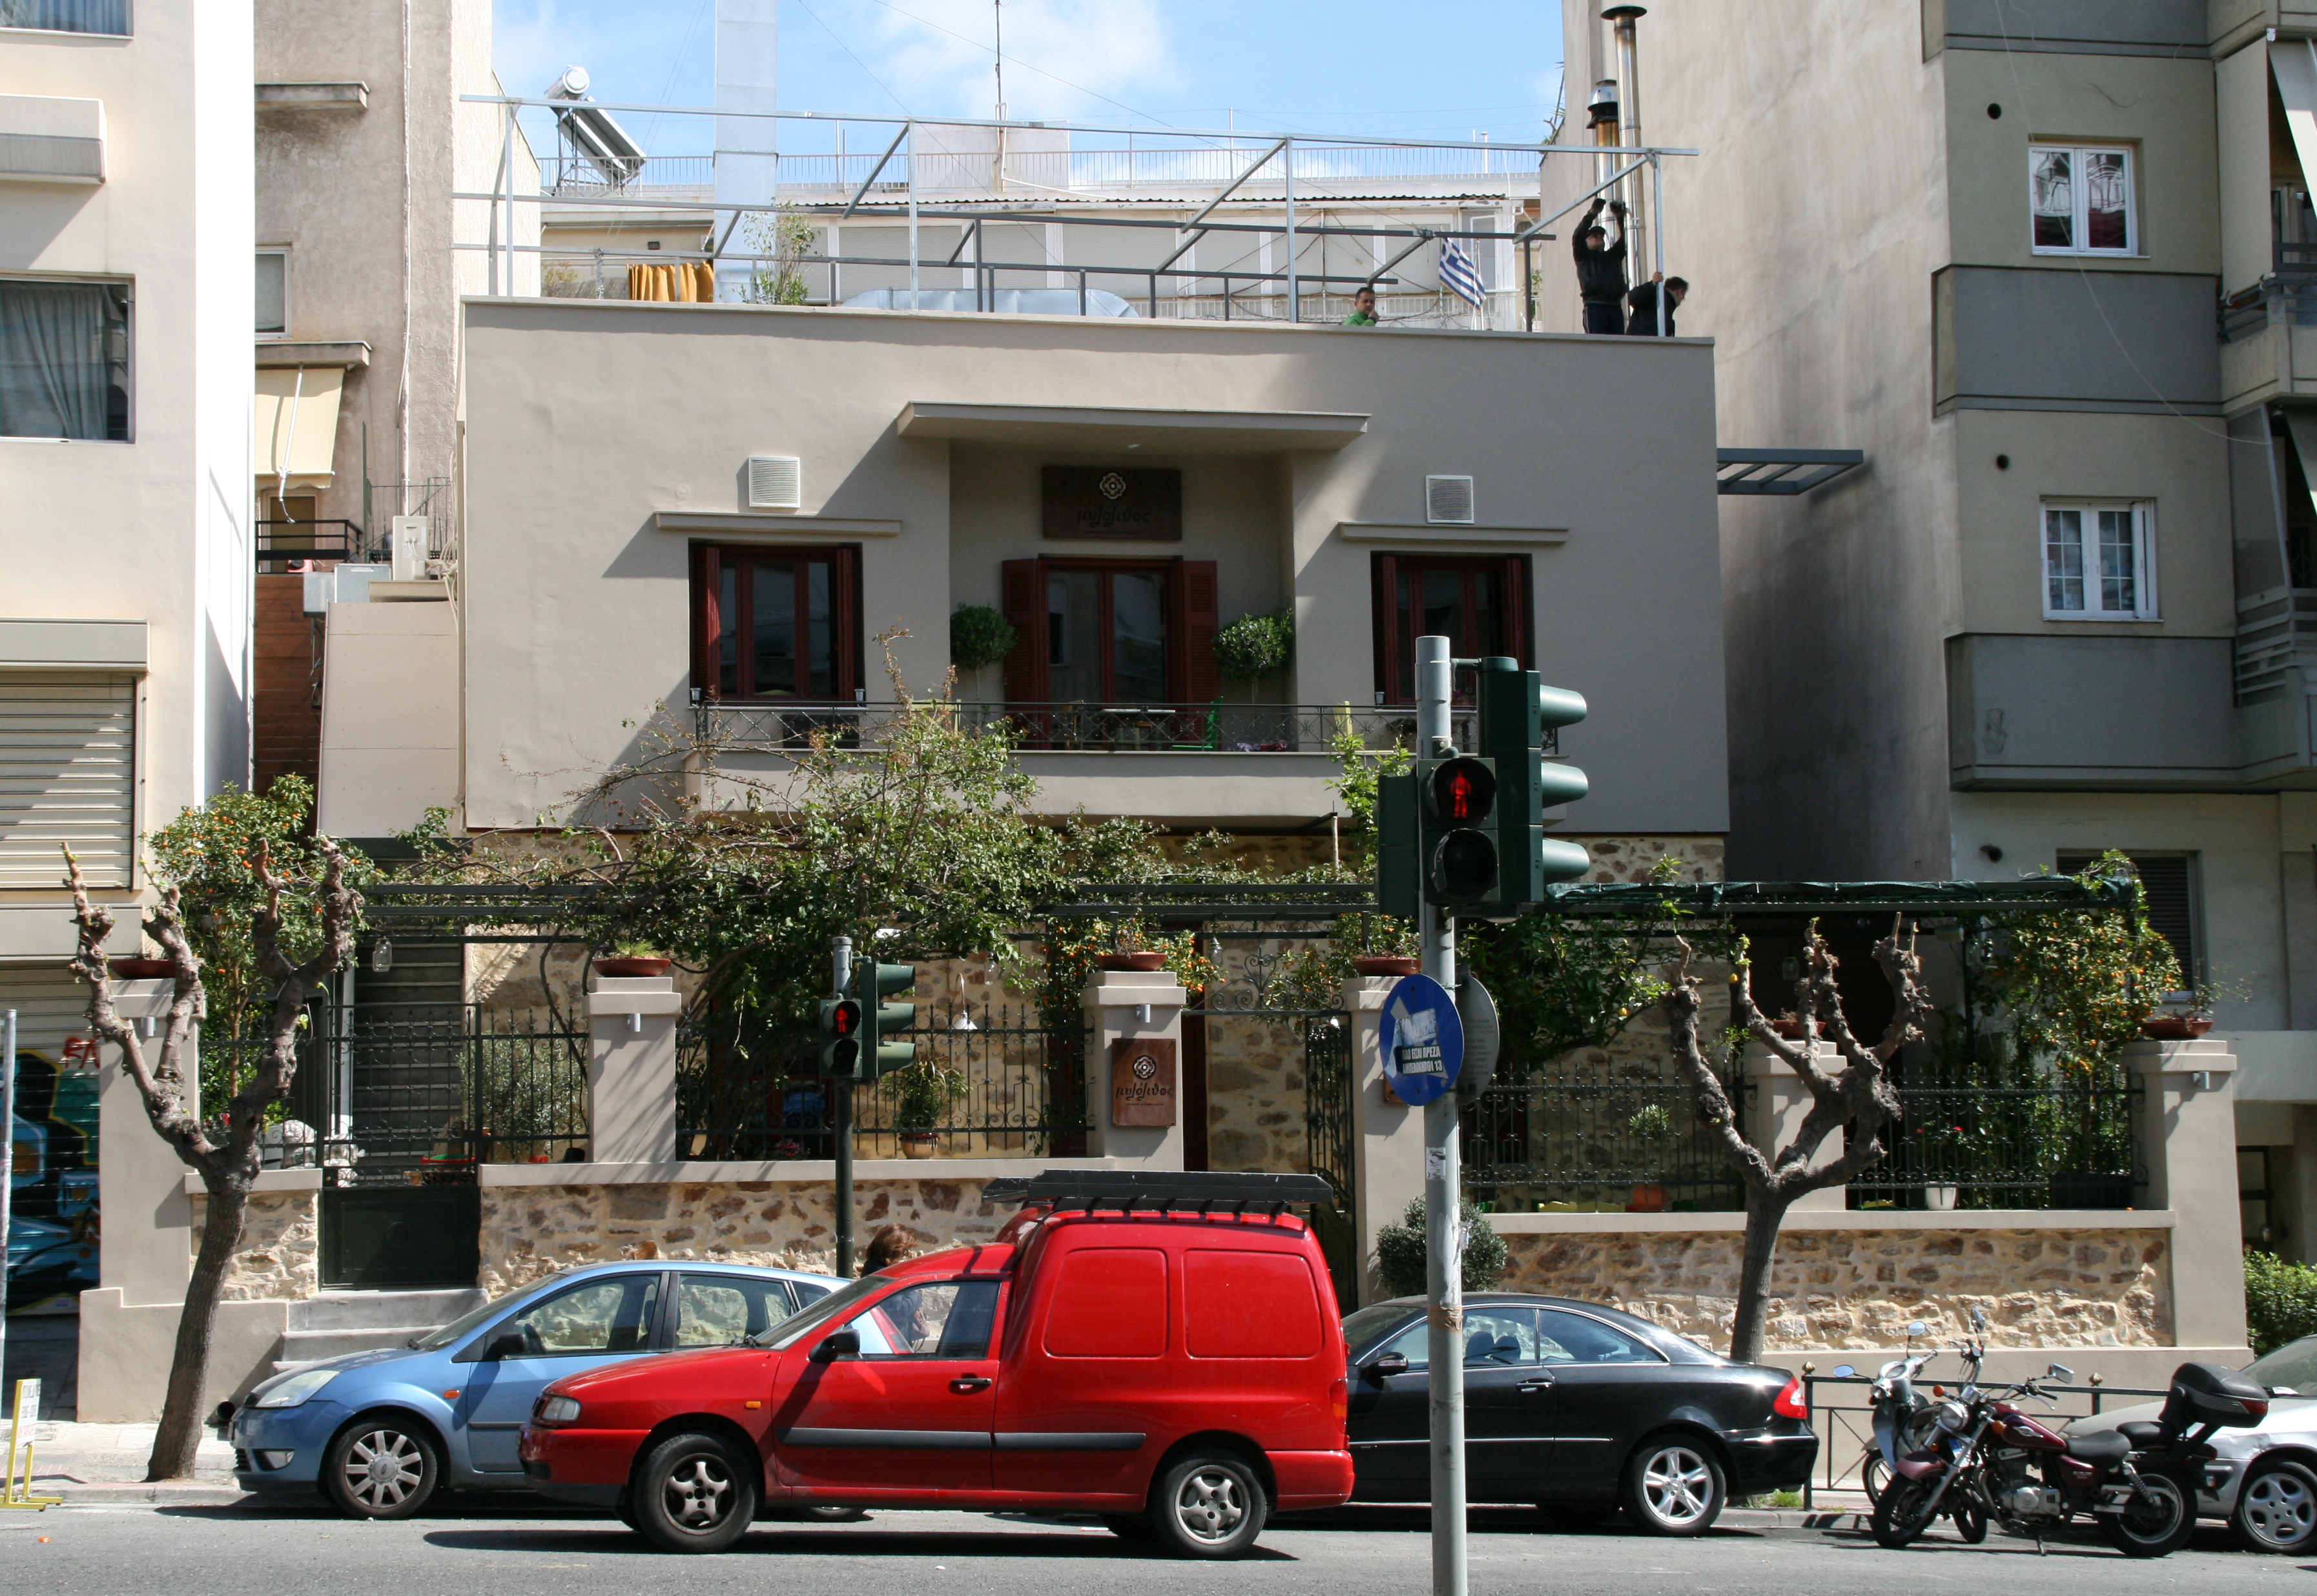 View of the main façade